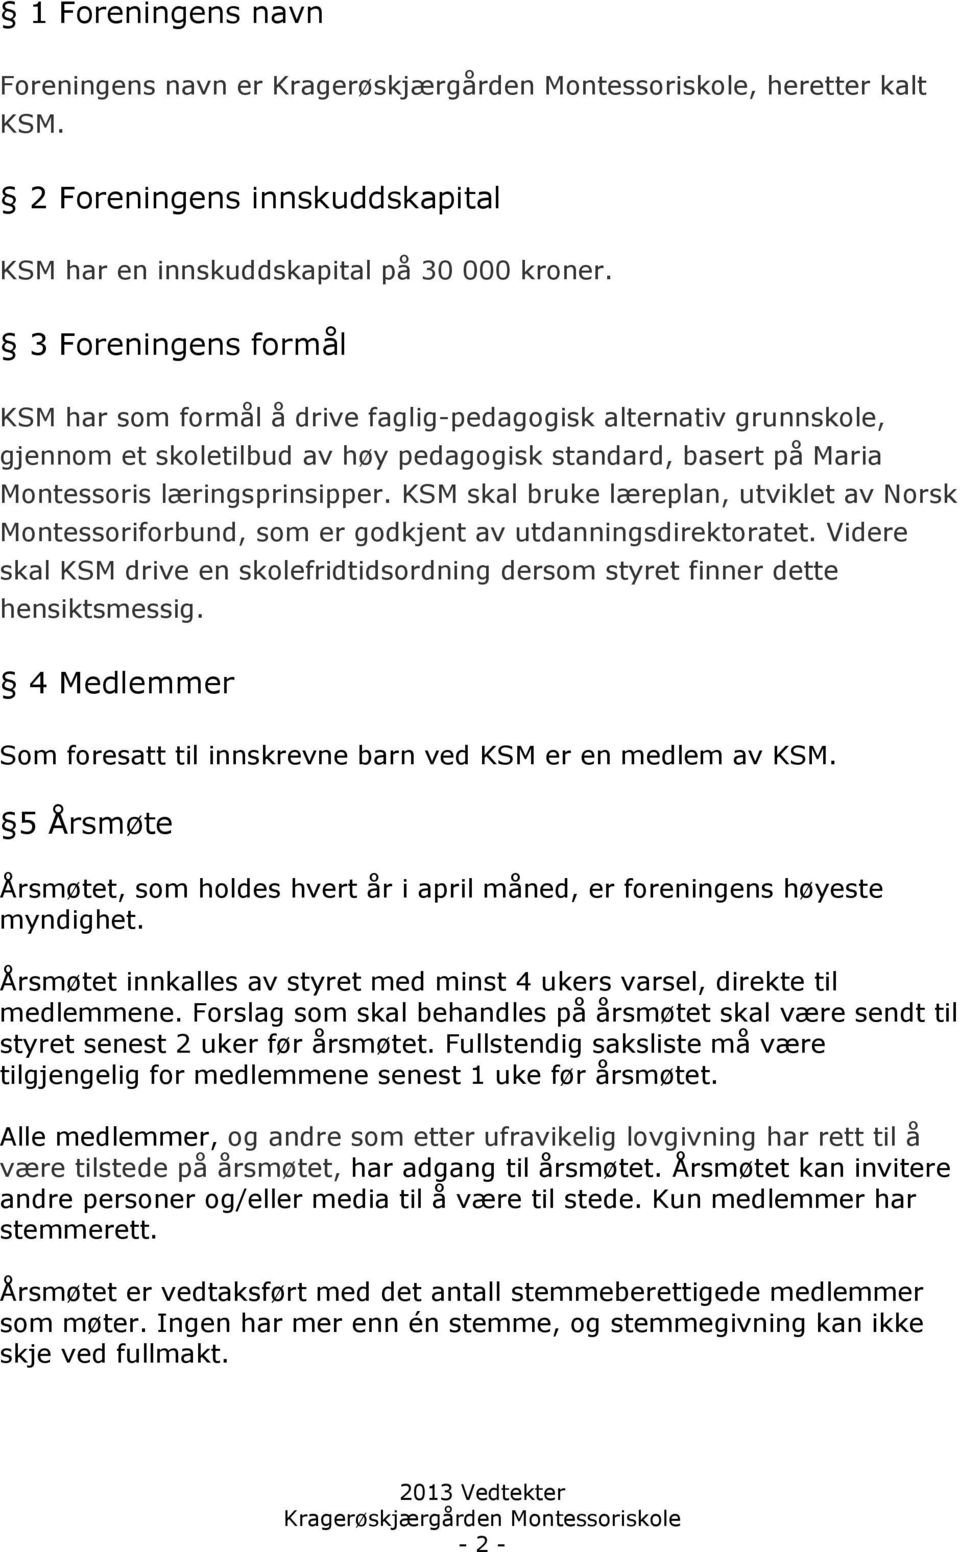 KSM skal bruke læreplan, utviklet av Norsk Montessoriforbund, som er godkjent av utdanningsdirektoratet. Videre skal KSM drive en skolefridtidsordning dersom styret finner dette hensiktsmessig.